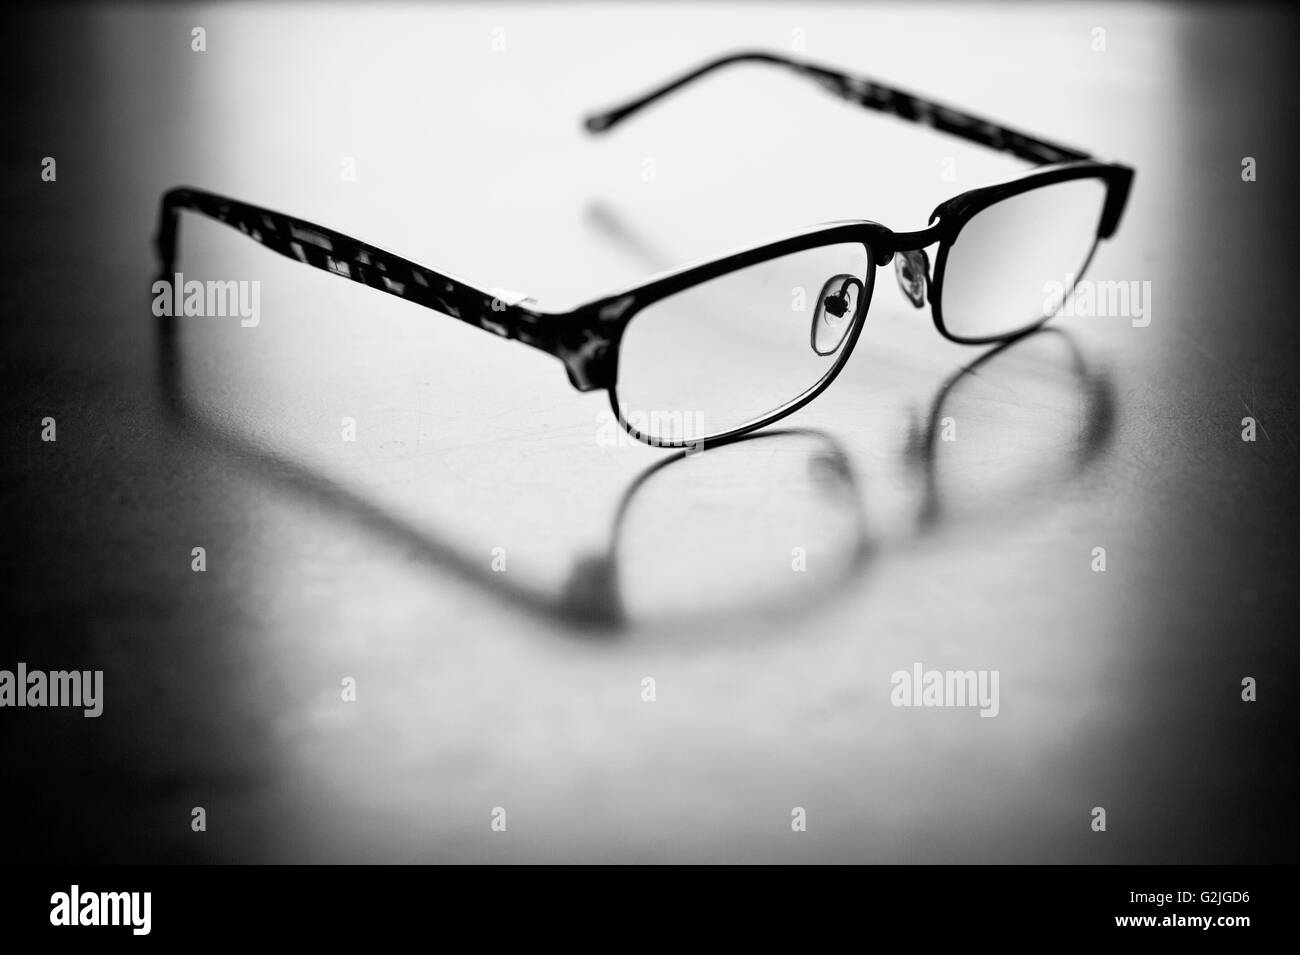 Les lunettes sur une feuille de papier blanc Banque D'Images